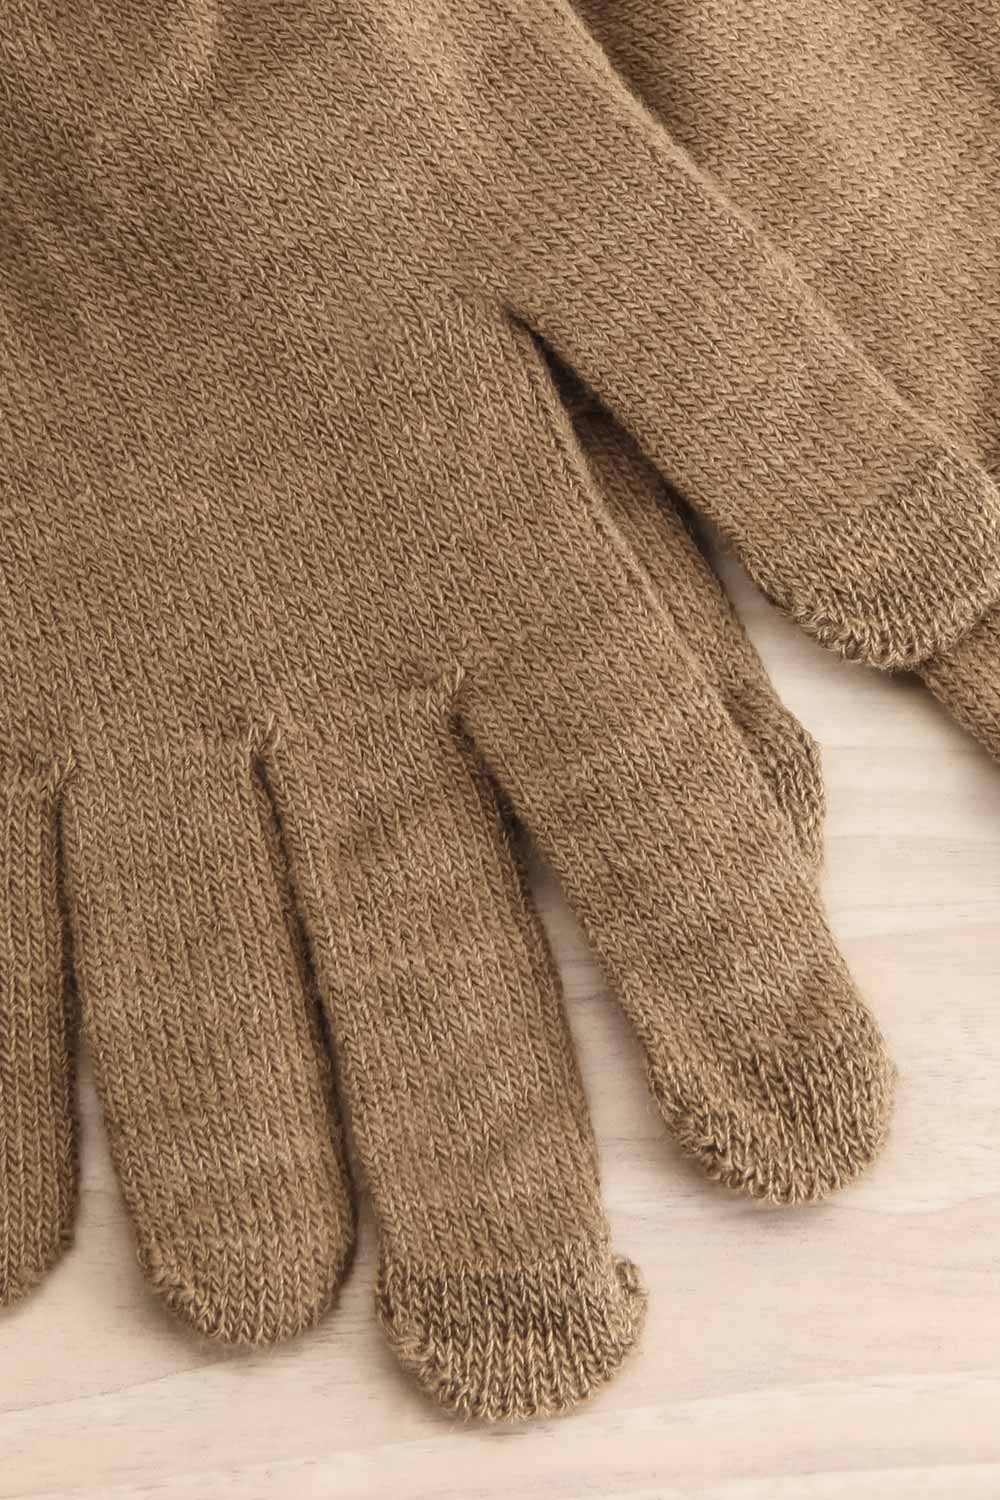 Volans Black | Finger Gloves